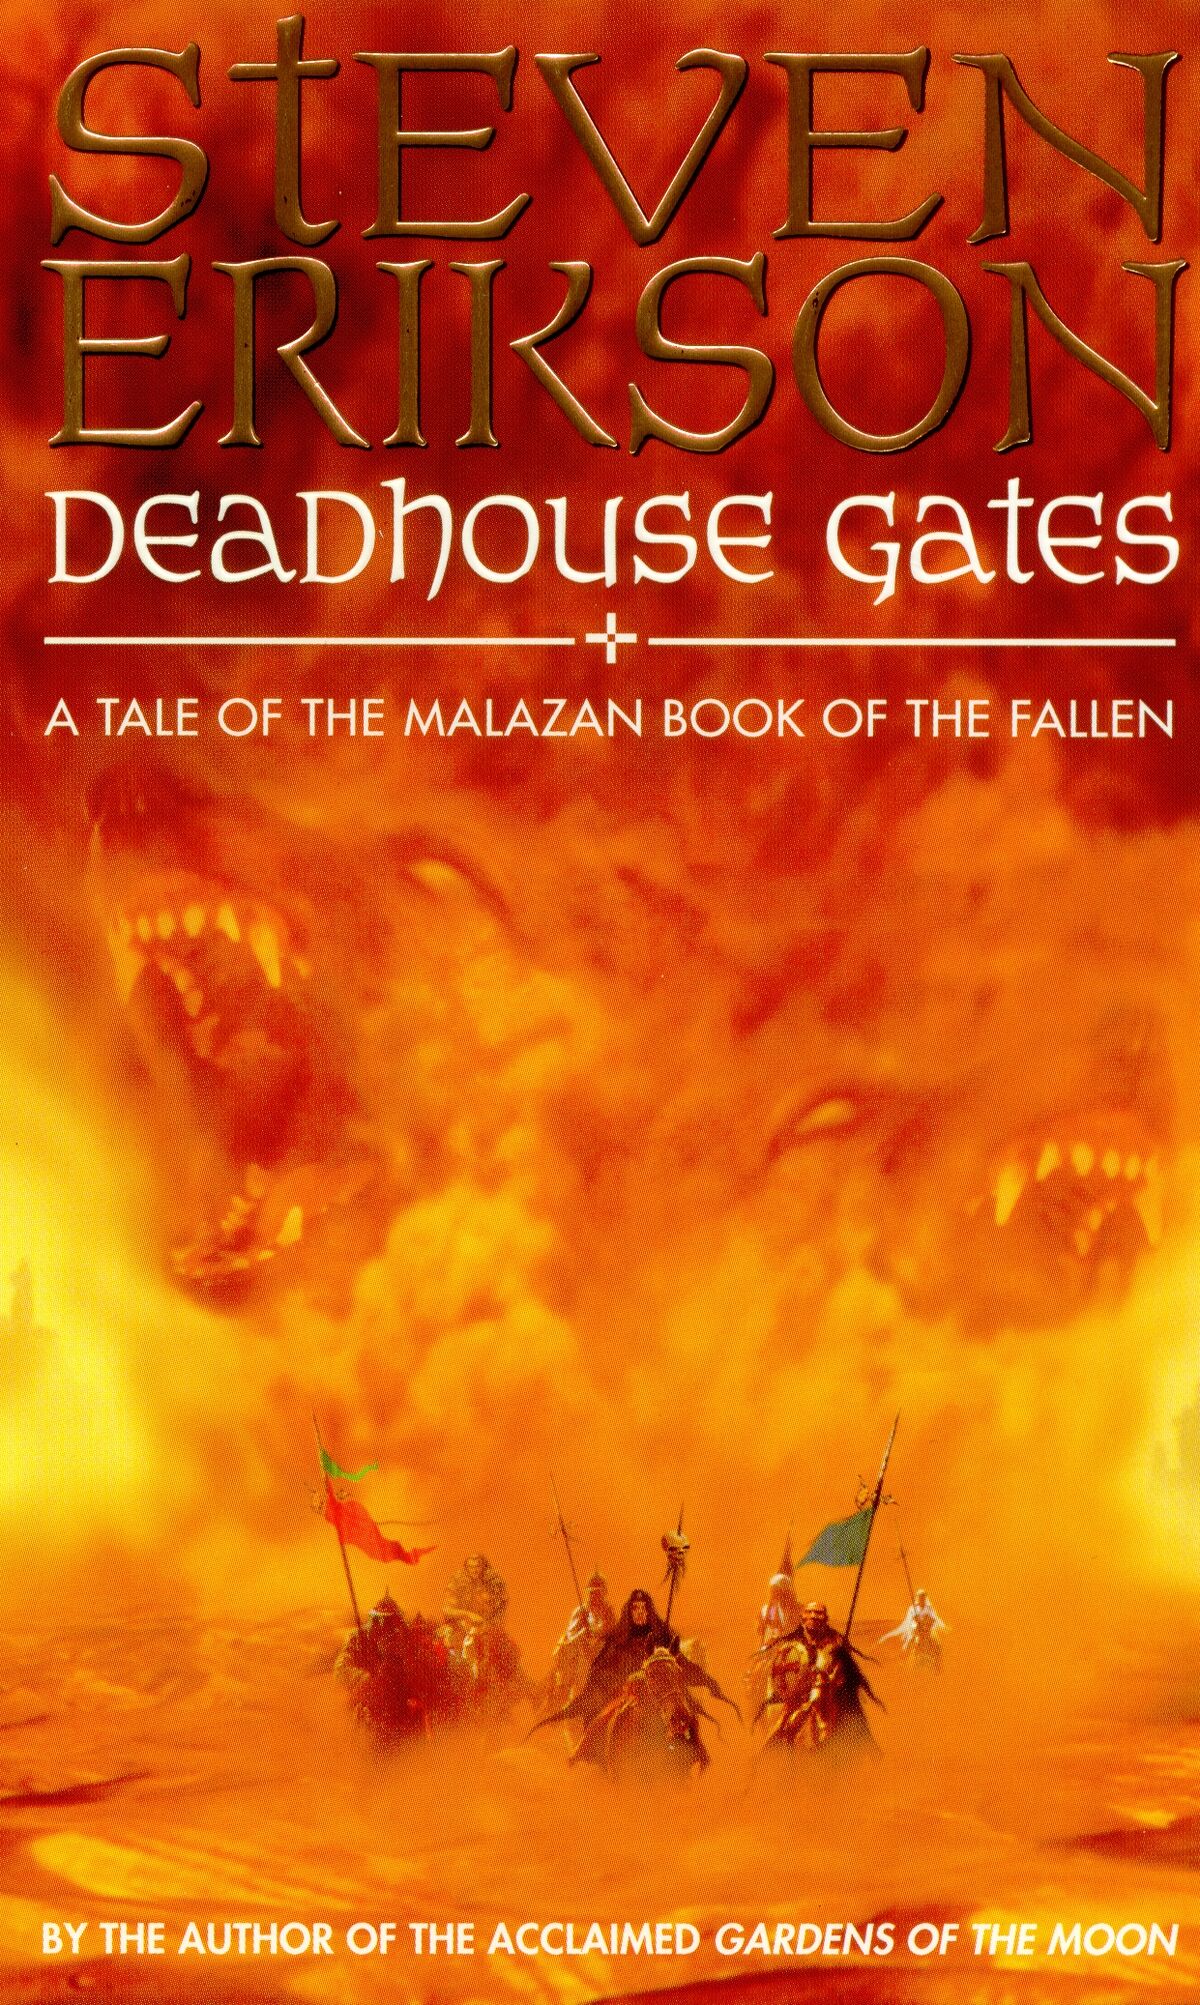 Gates of Fire - Wikipedia